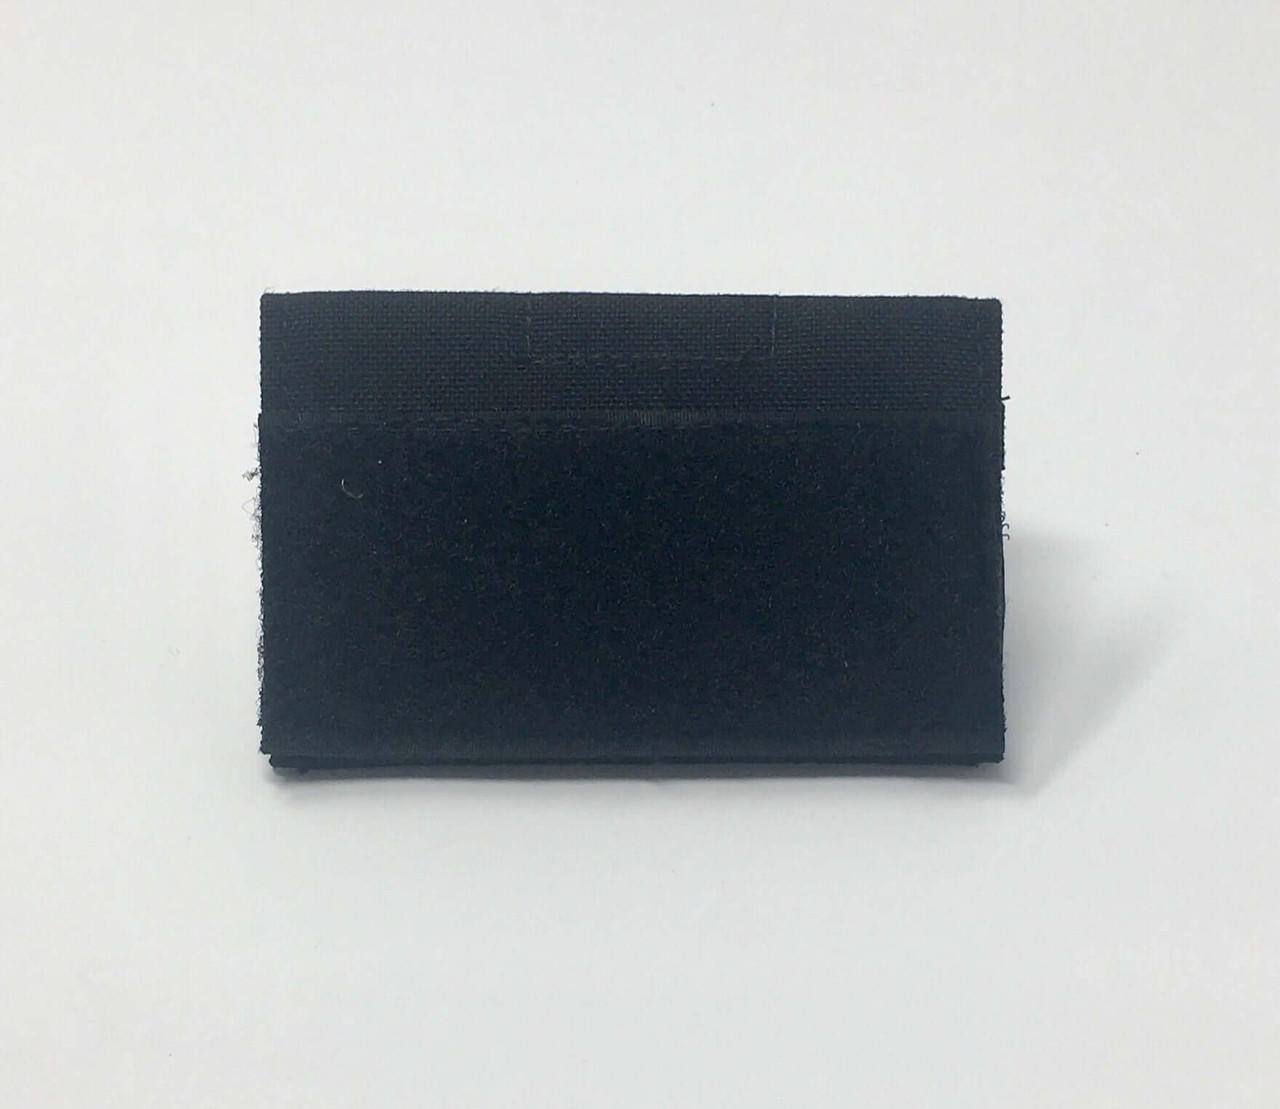  Explosive Ops Gear Battery Mini Admin Pouch (Black) 